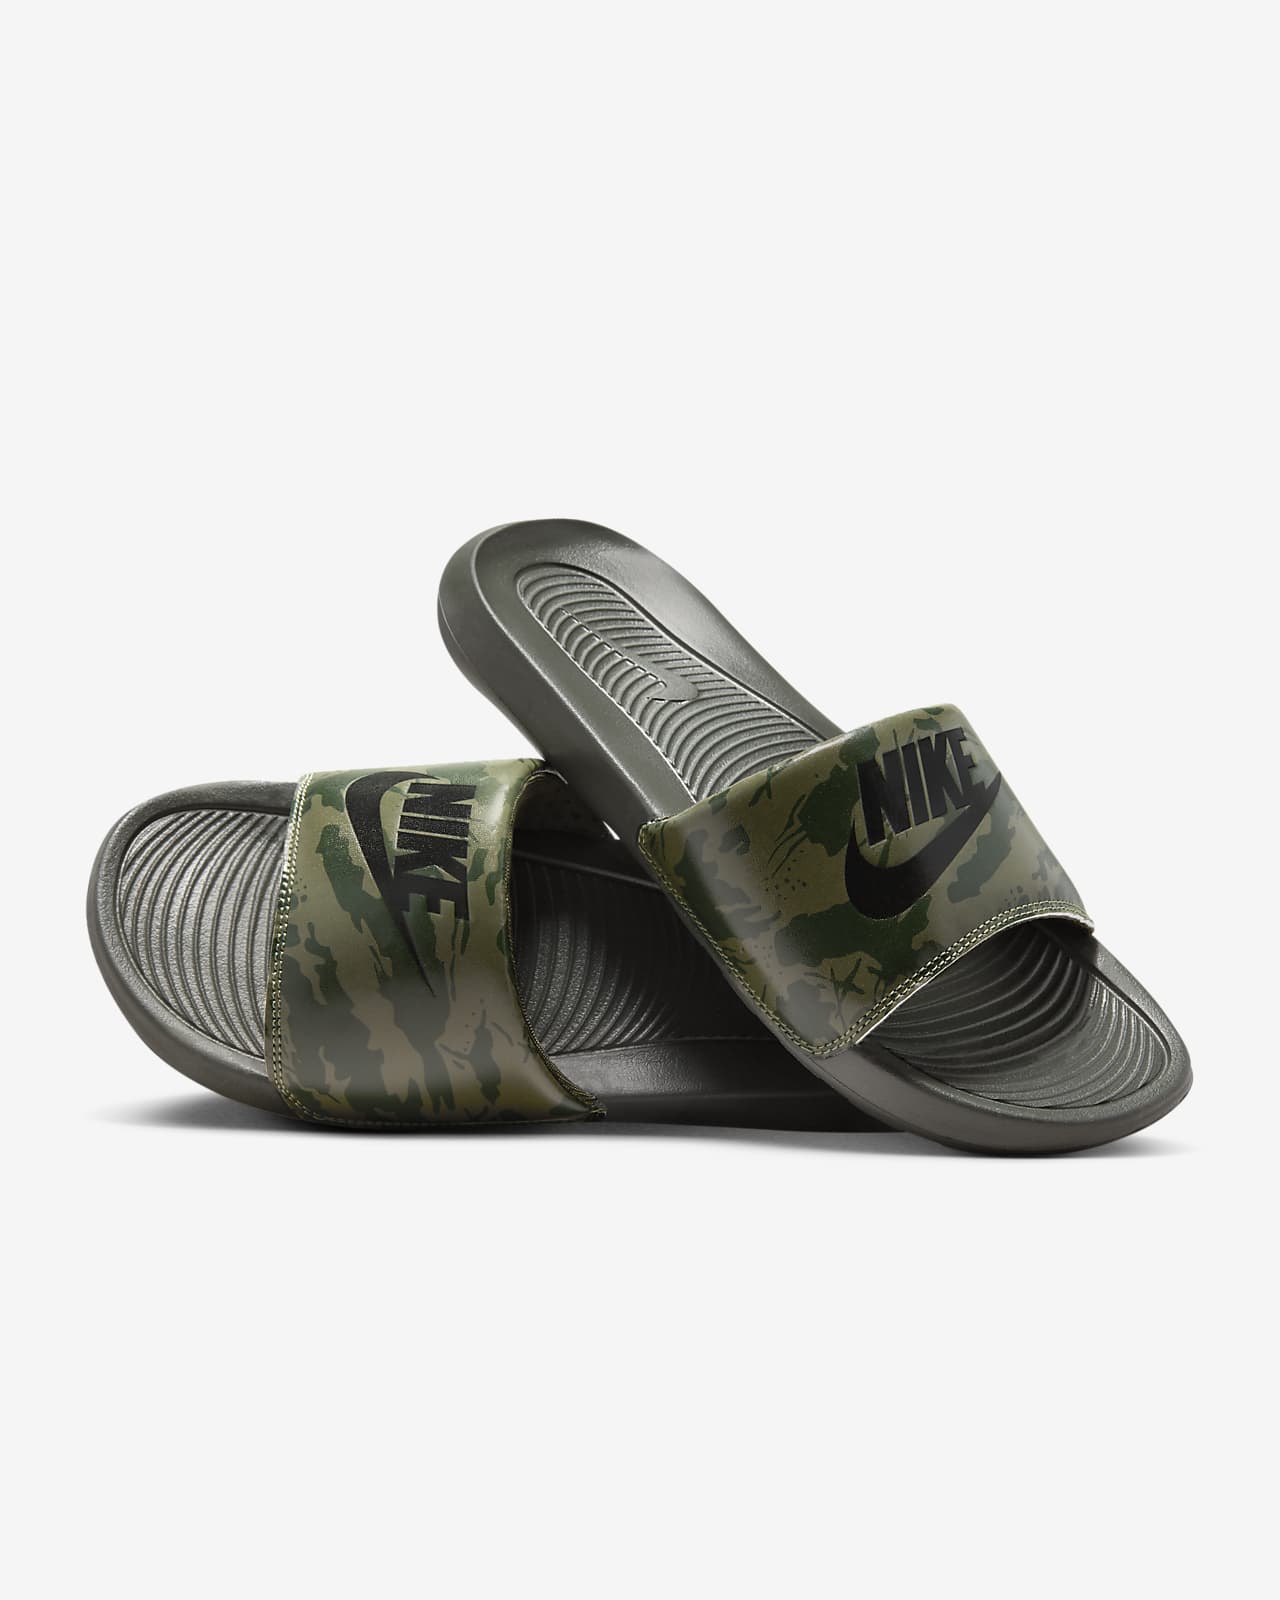 Nike Victori One Slide - Green - Size - 6